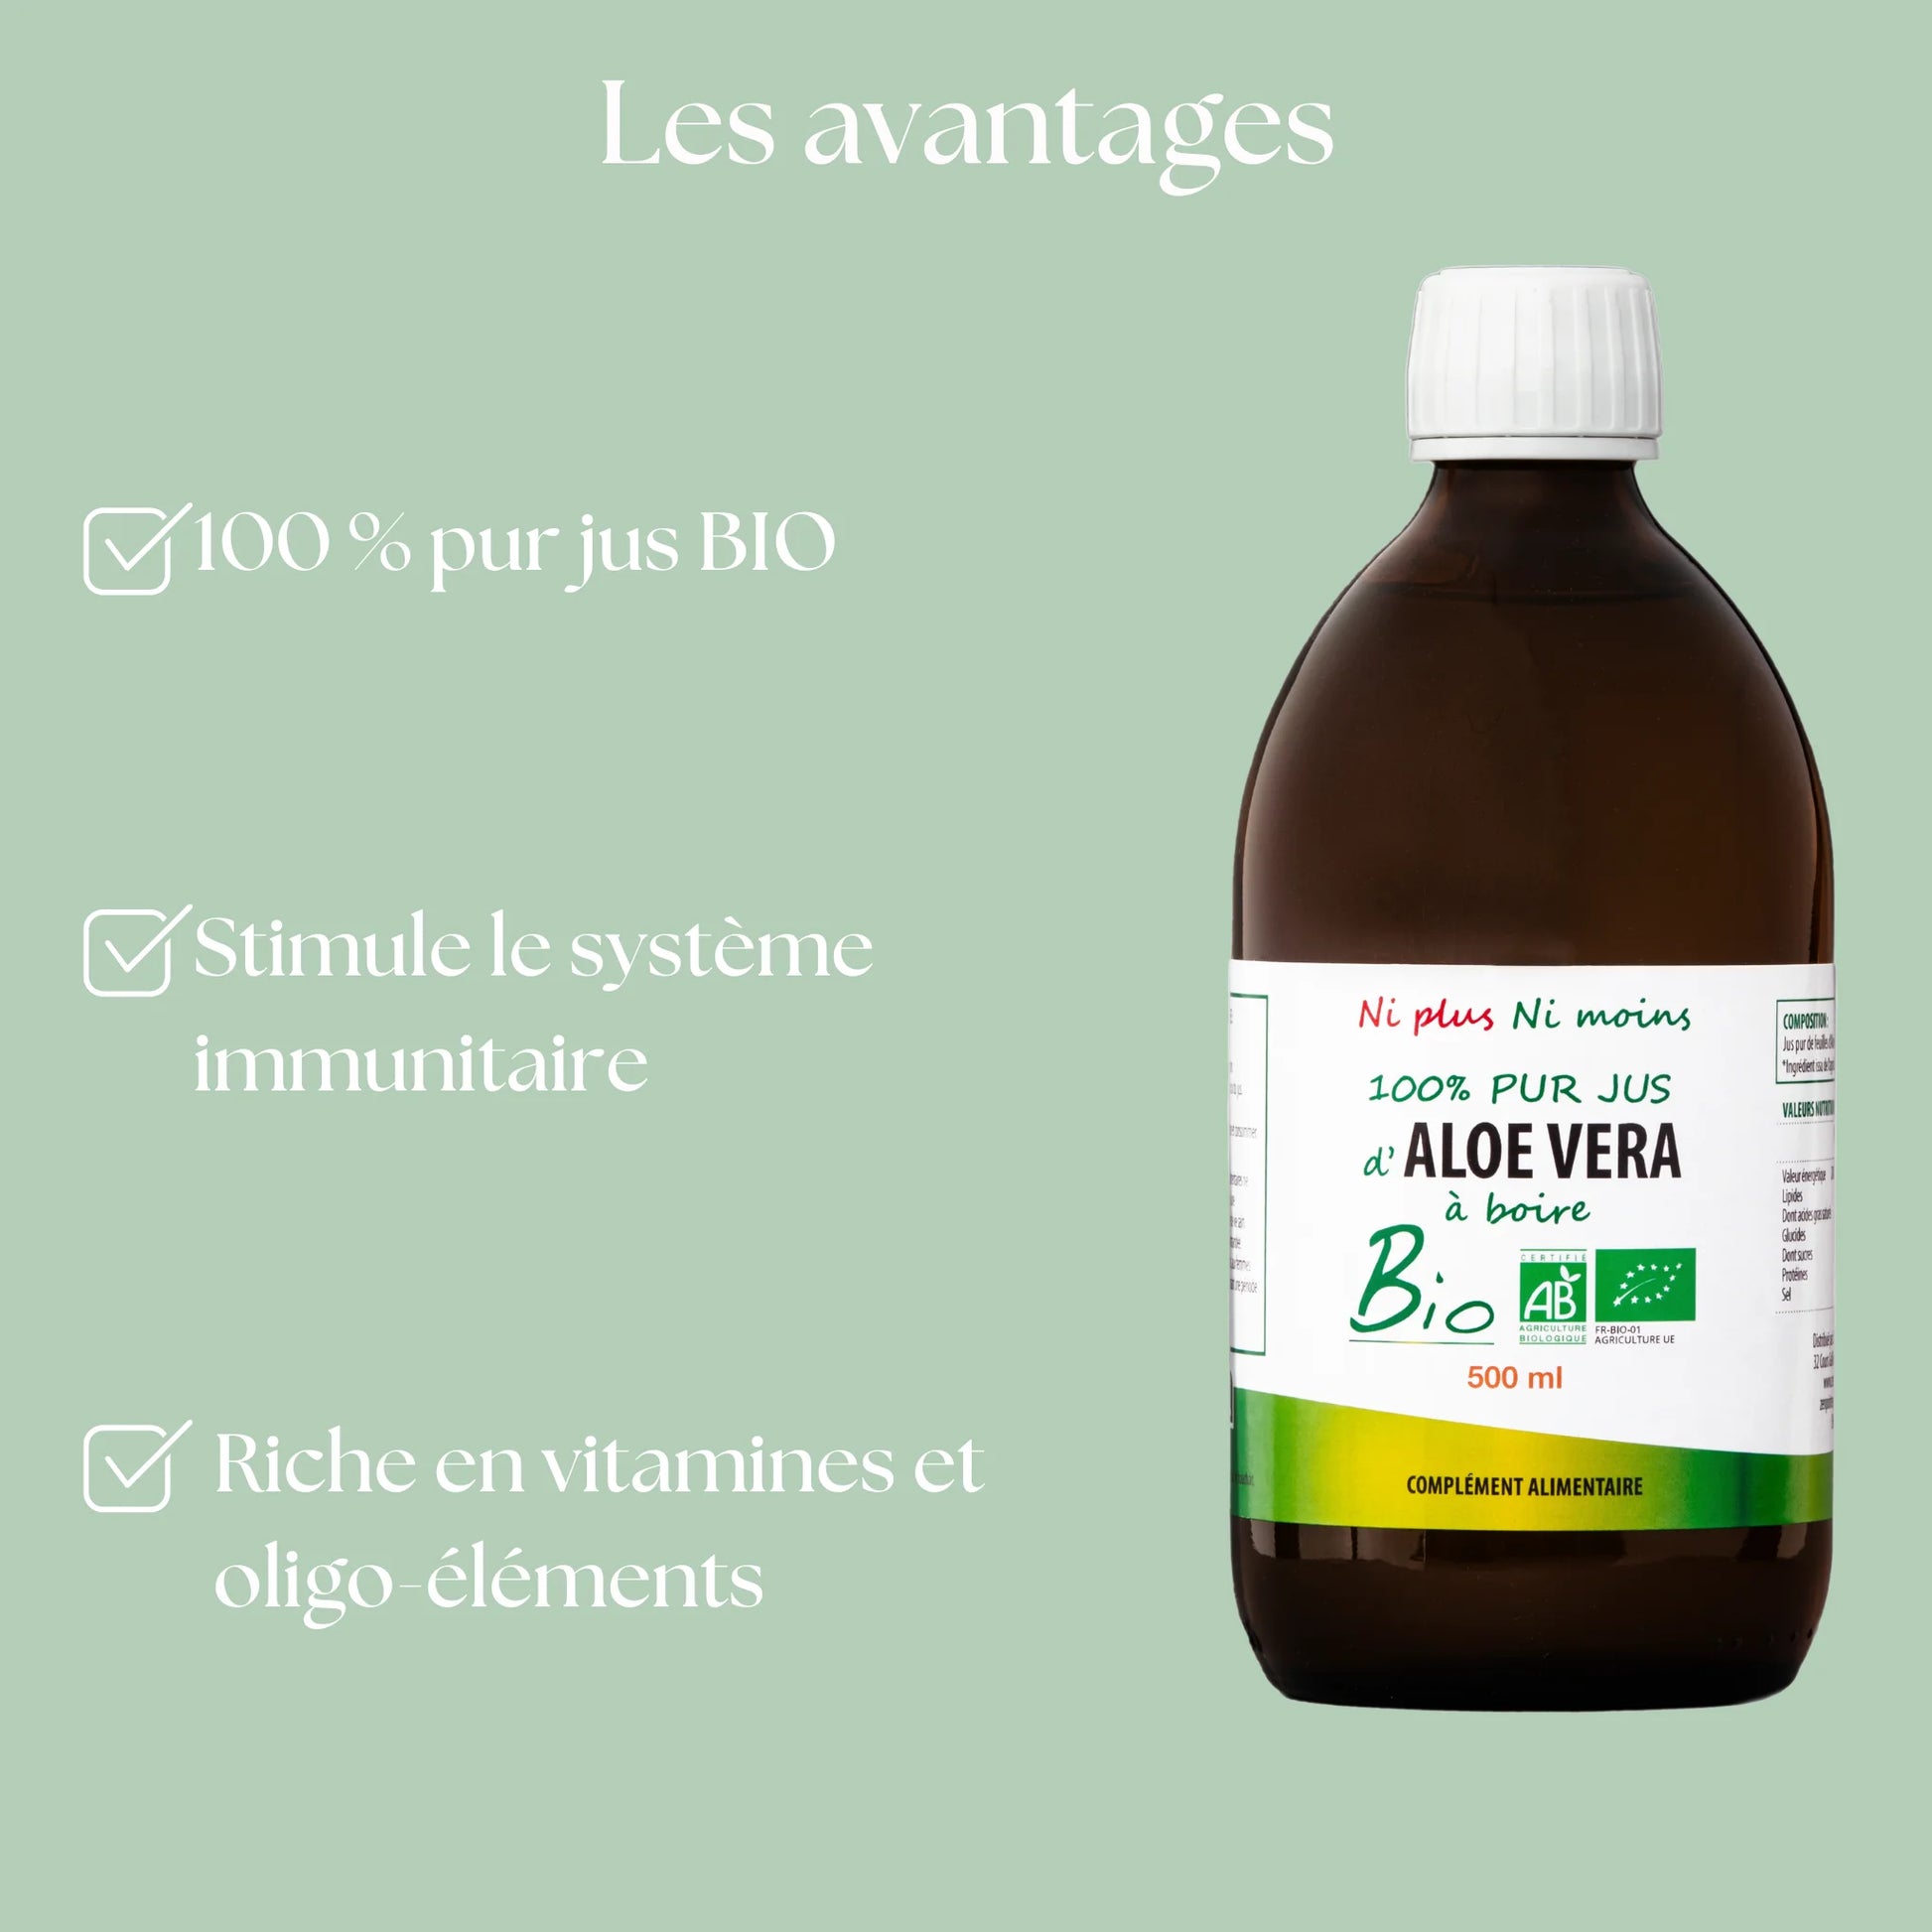 Atout sante nature vous propose son pur jus d'aloe vera bio 100% pur jus riche en vitamine et en oligo éléments pour votre confort digestif et votre stimulation immunitaire.